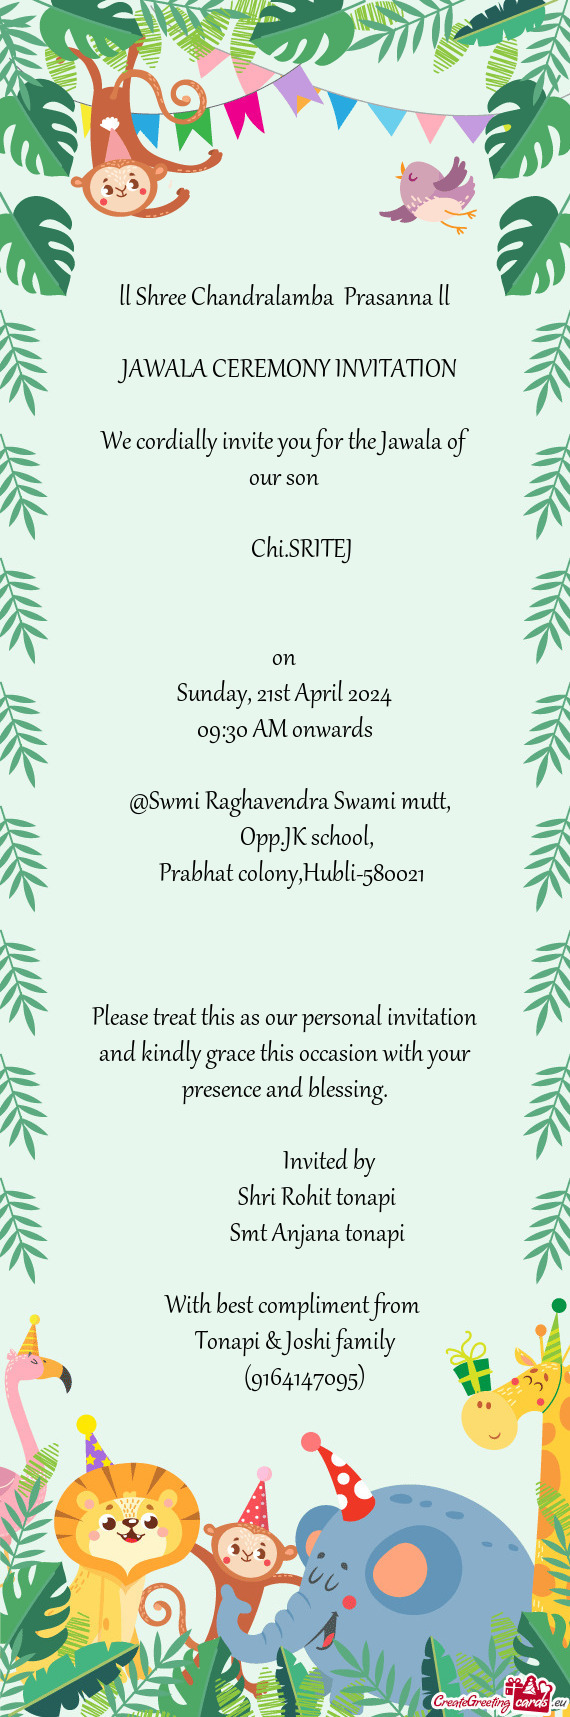 @Swmi Raghavendra Swami mutt